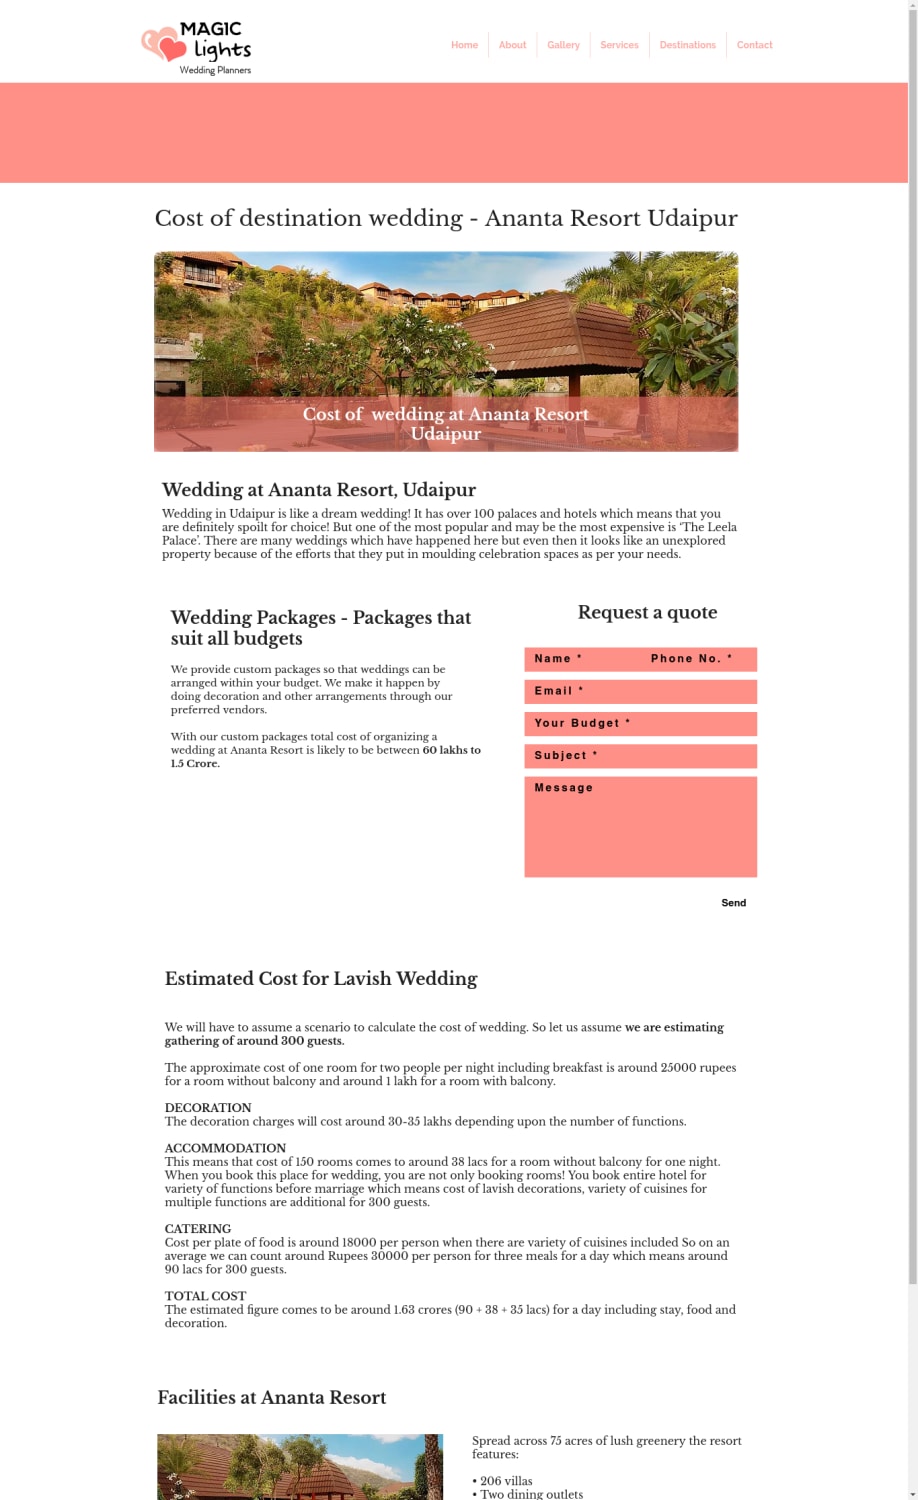 Cost of Wedding at Ananta Resort, Udaipur